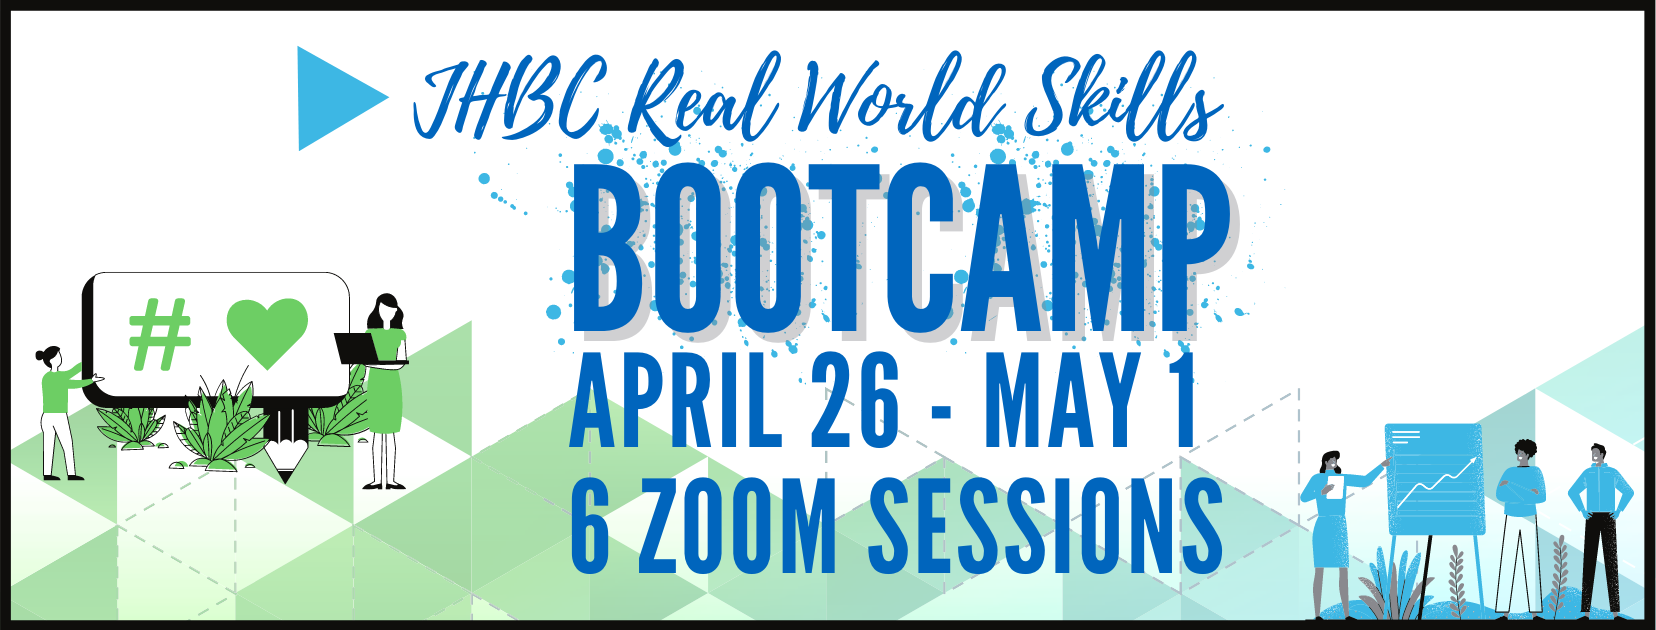 JHBC Real World Bootcamp April 26-May 1